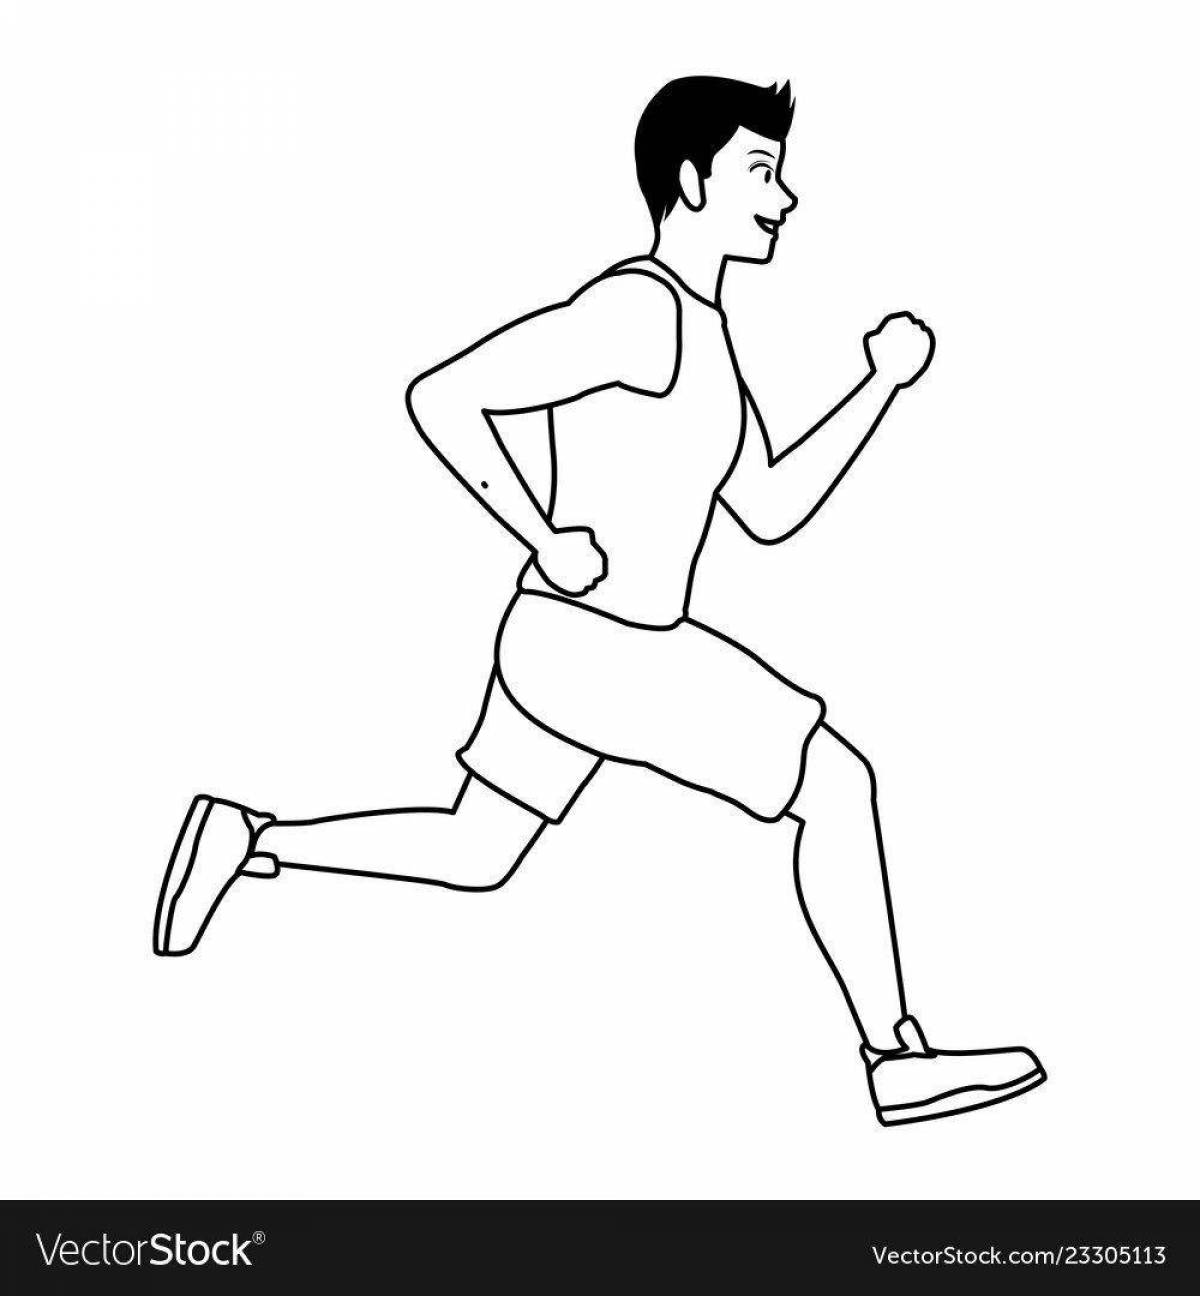 Athletic running man